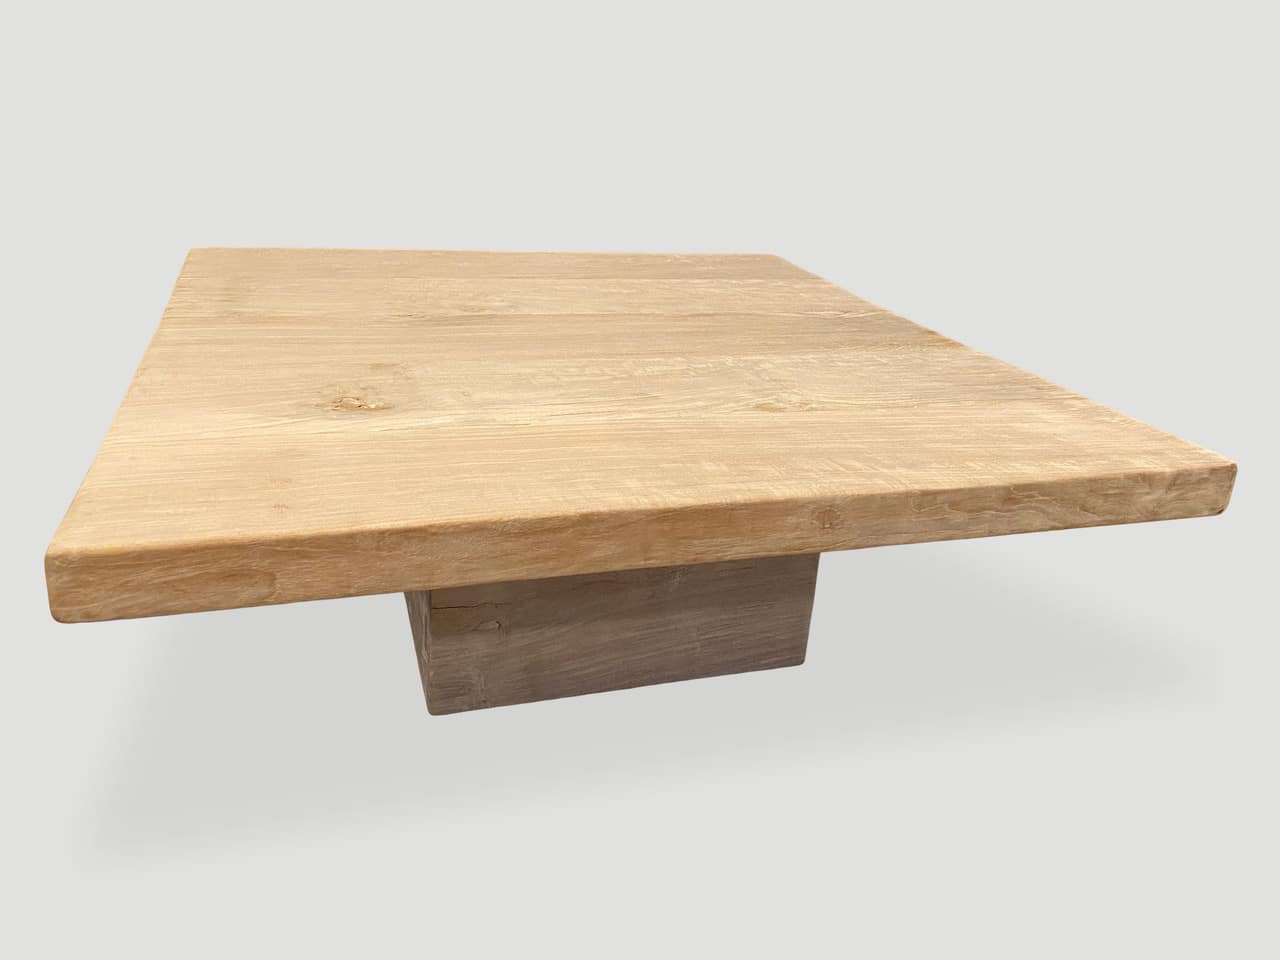 st barts teak wood coffee table